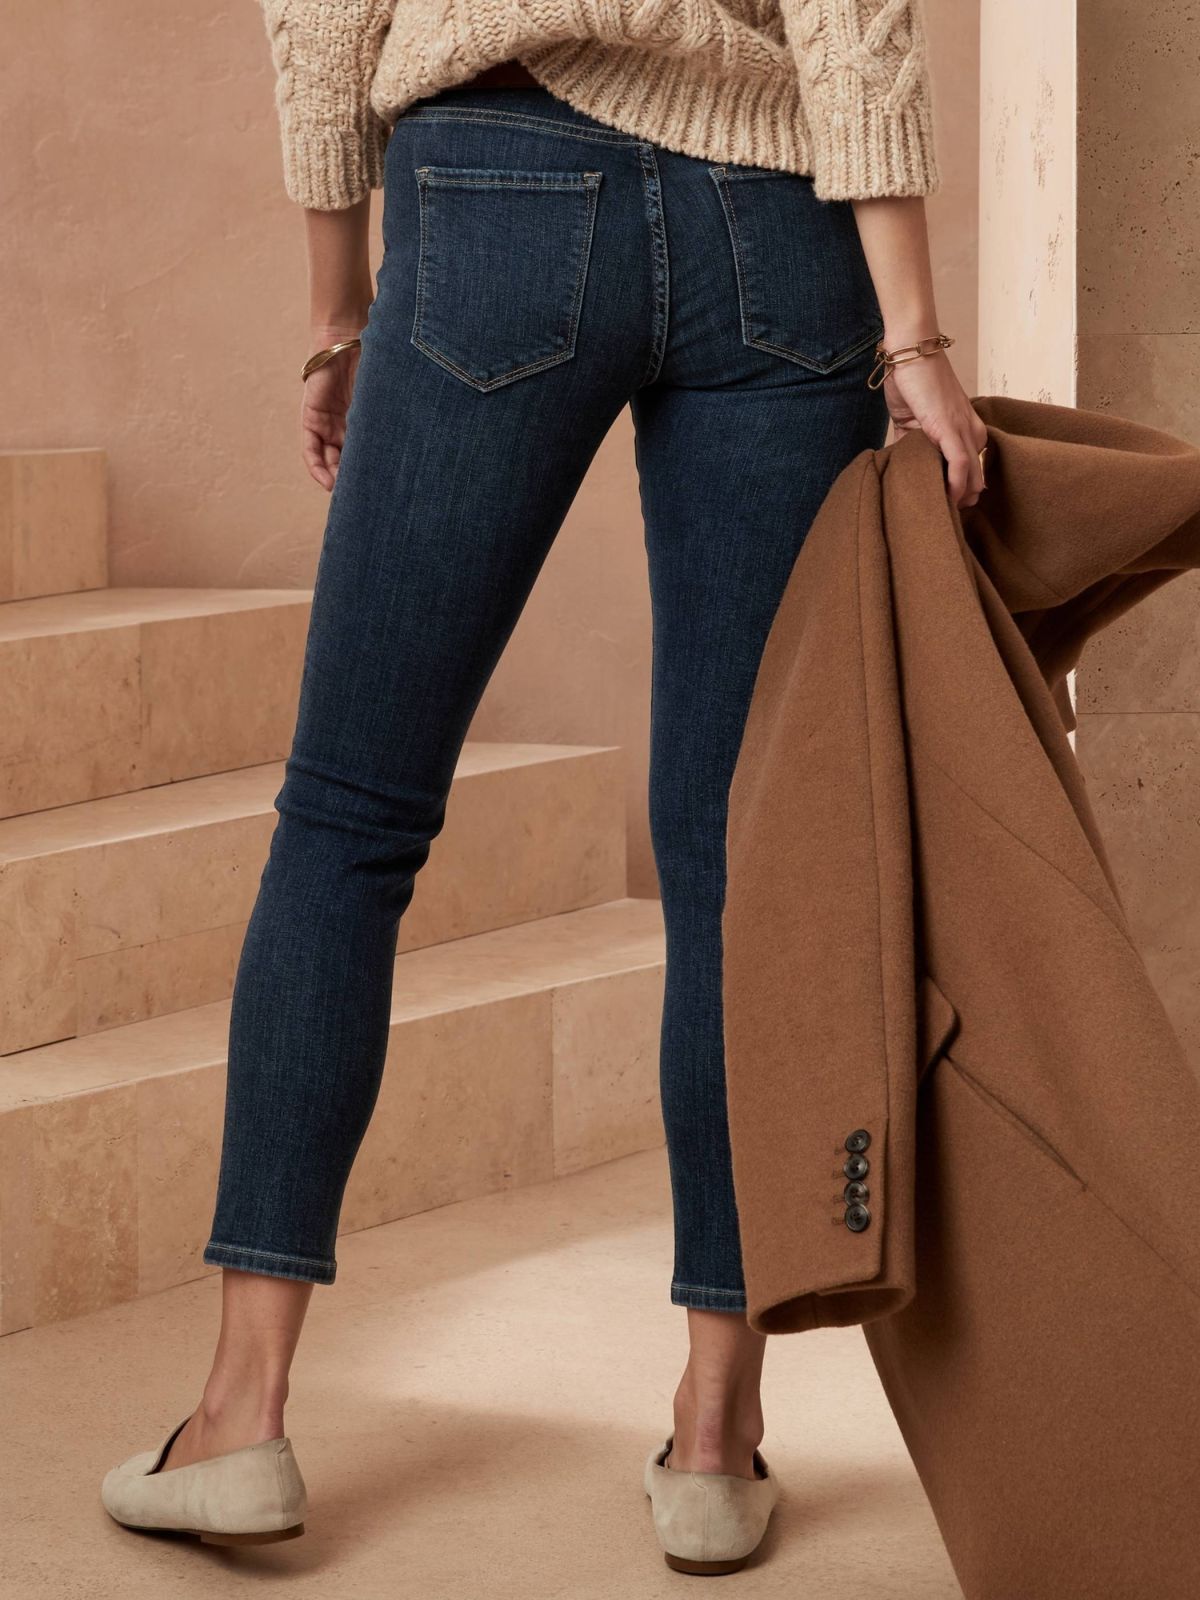  ג'ינס ווש בגזרת סקיני של BANANA REPUBLIC